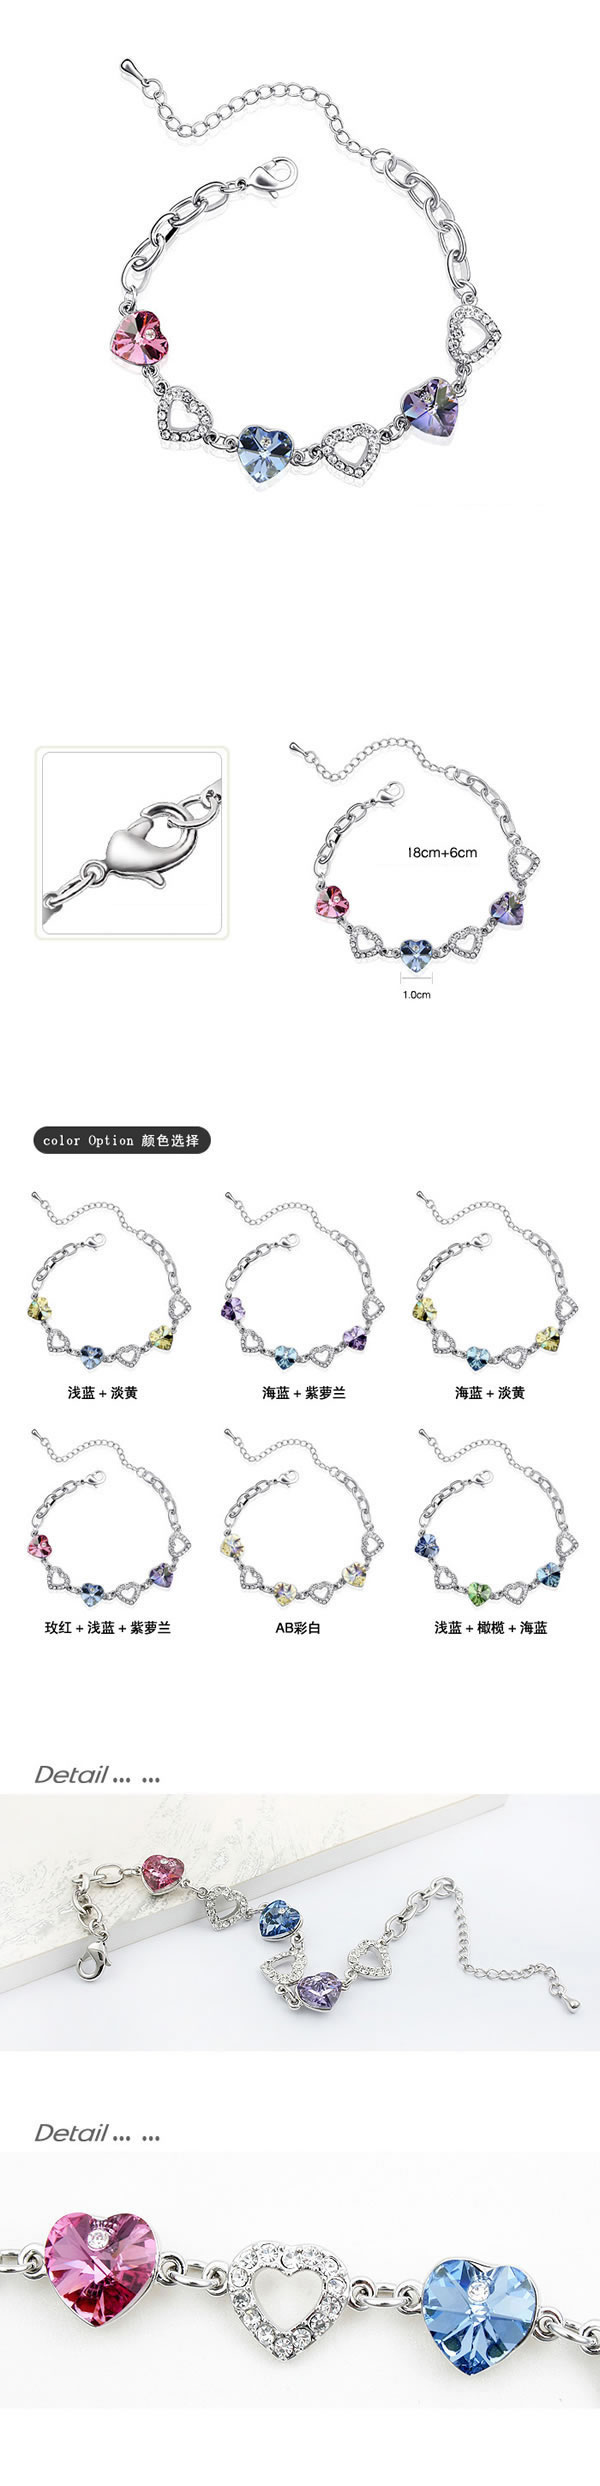 Printed Rose + blue + violet Purple Bracelet Alloy Crystal Bracelets,Crystal Bracelets